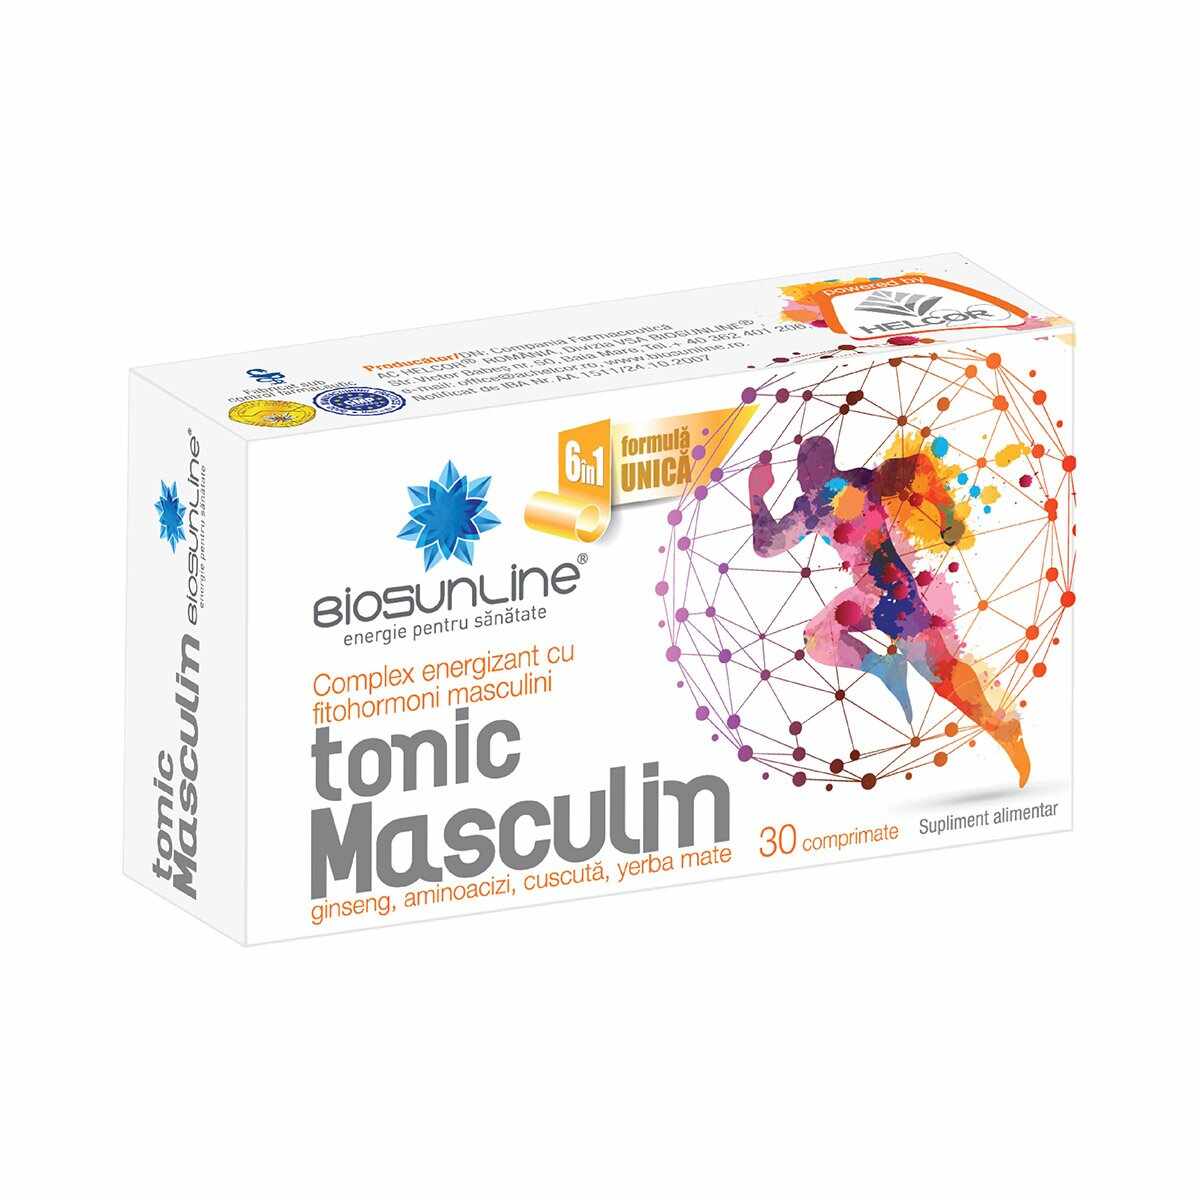 Tonic Masculin, BioSunLine, 30 comprimate